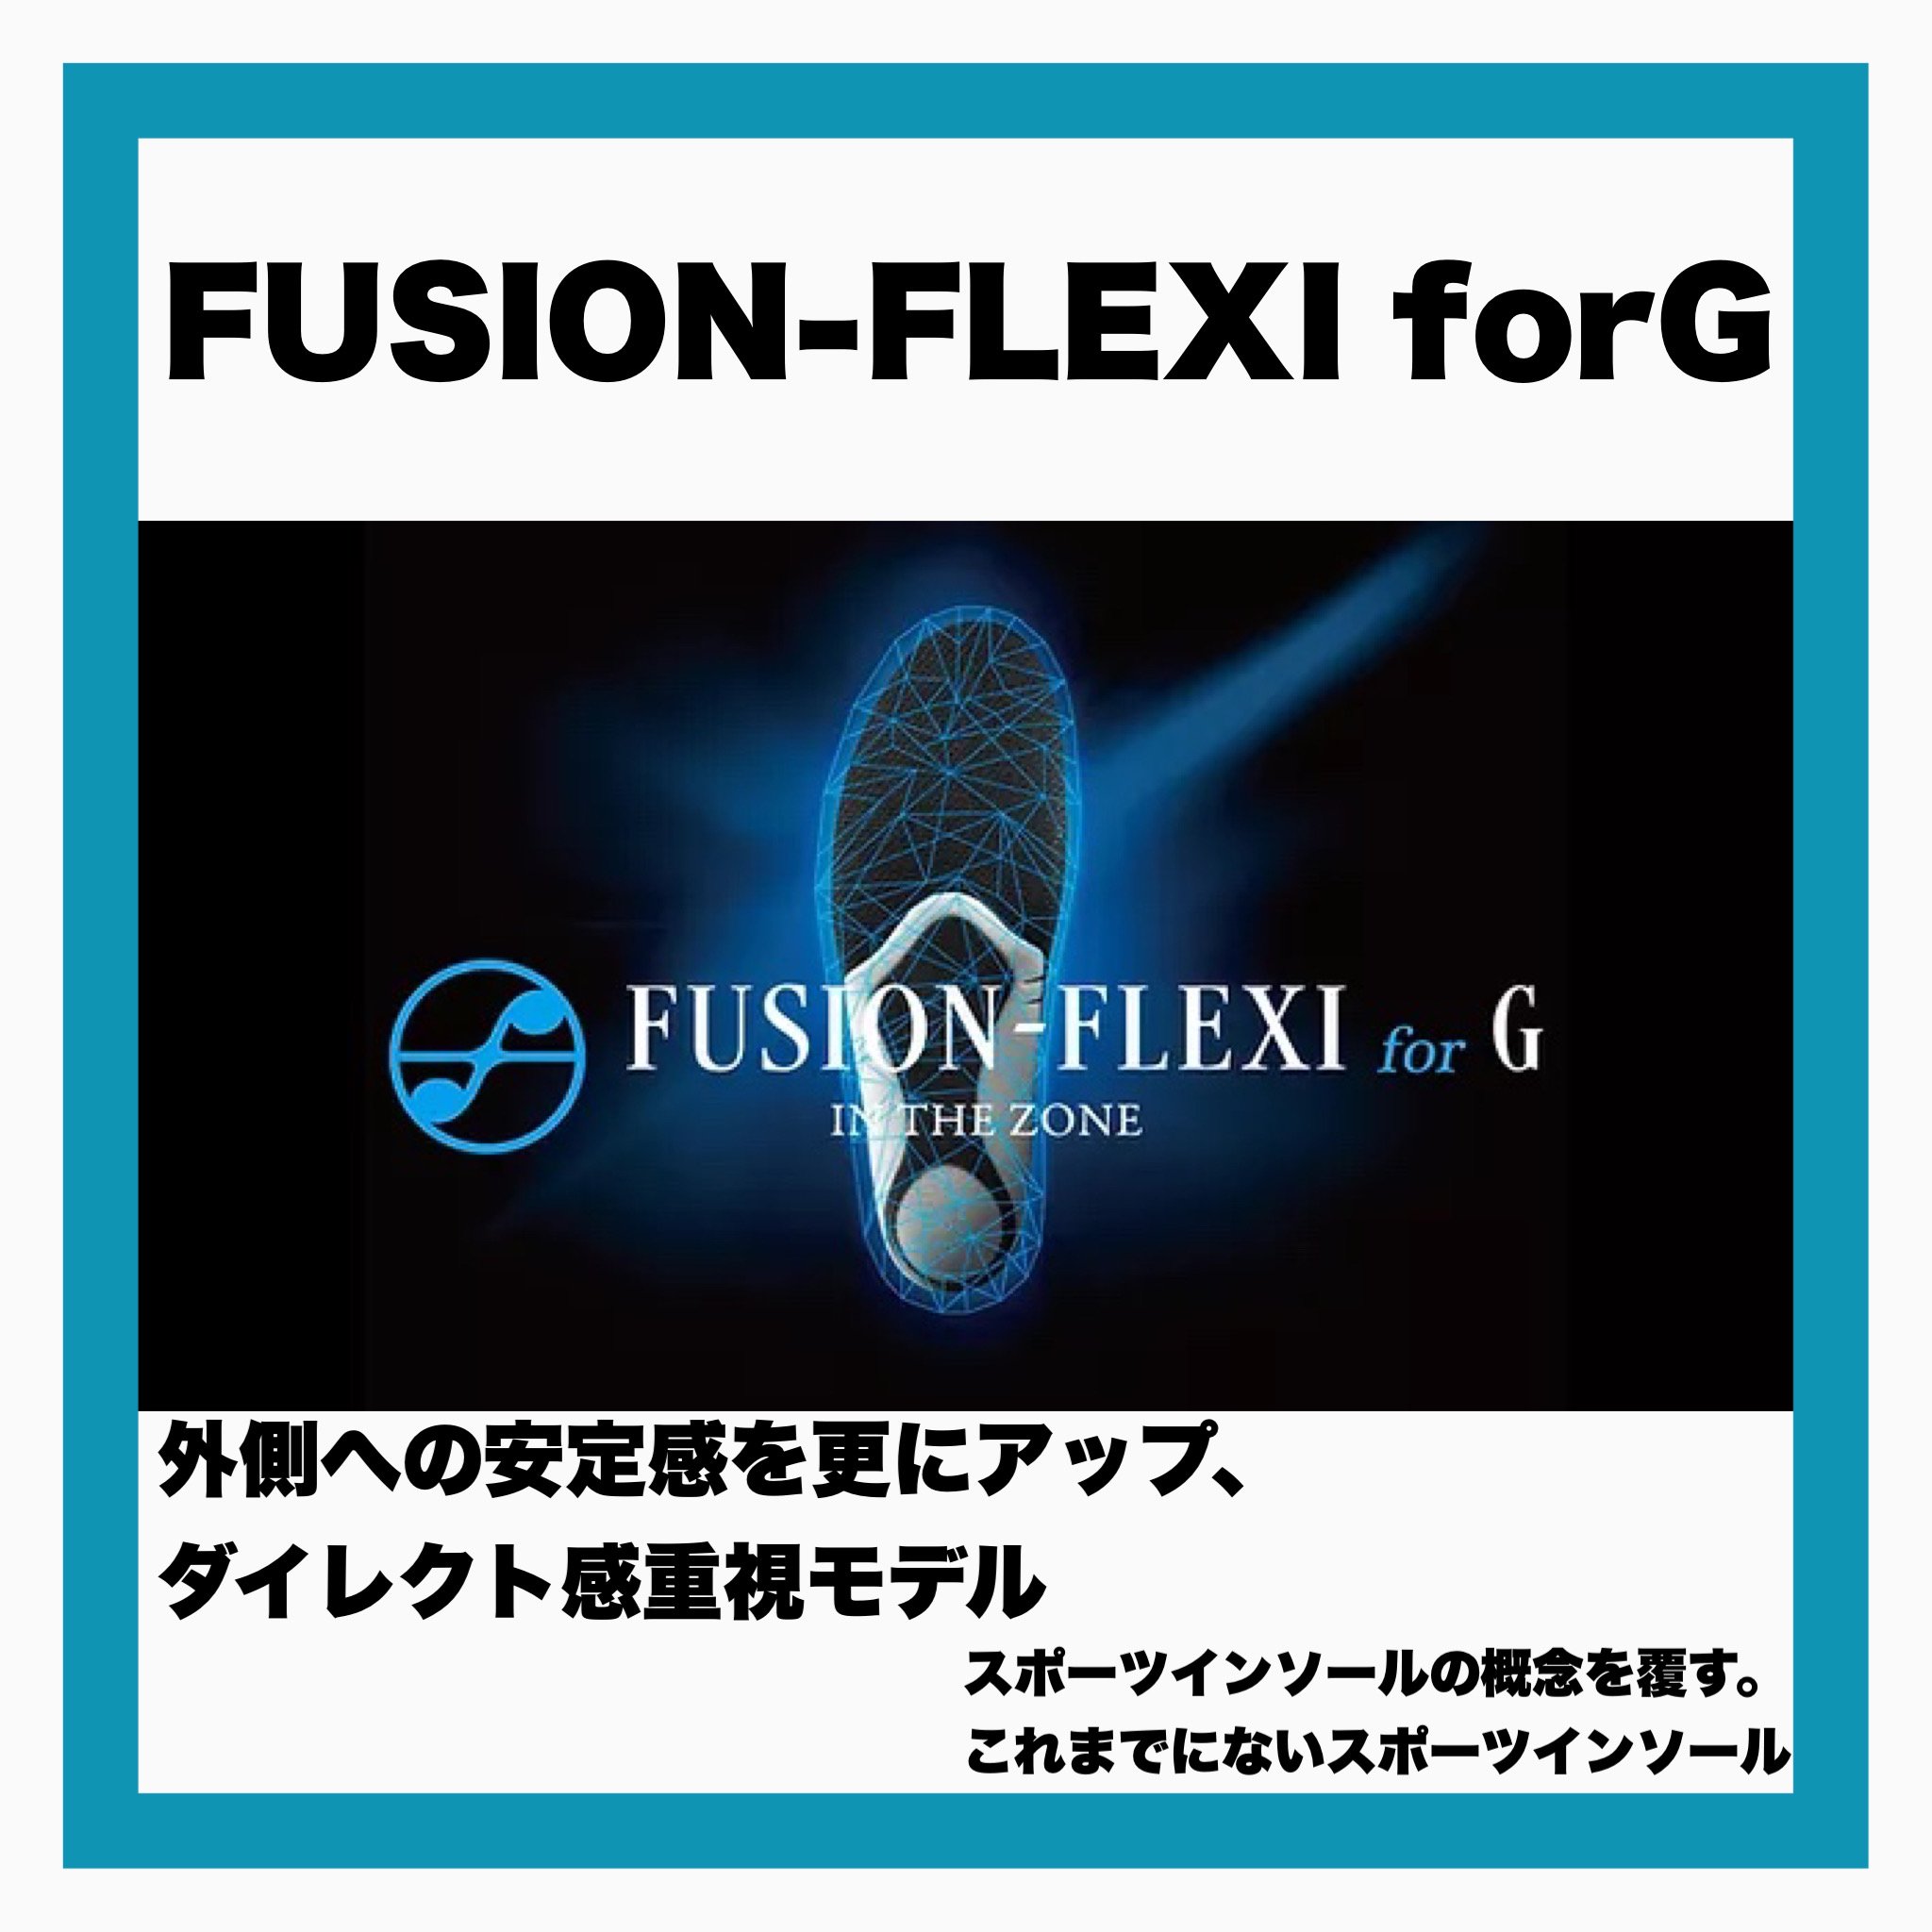 FUSION-FLEXI forG